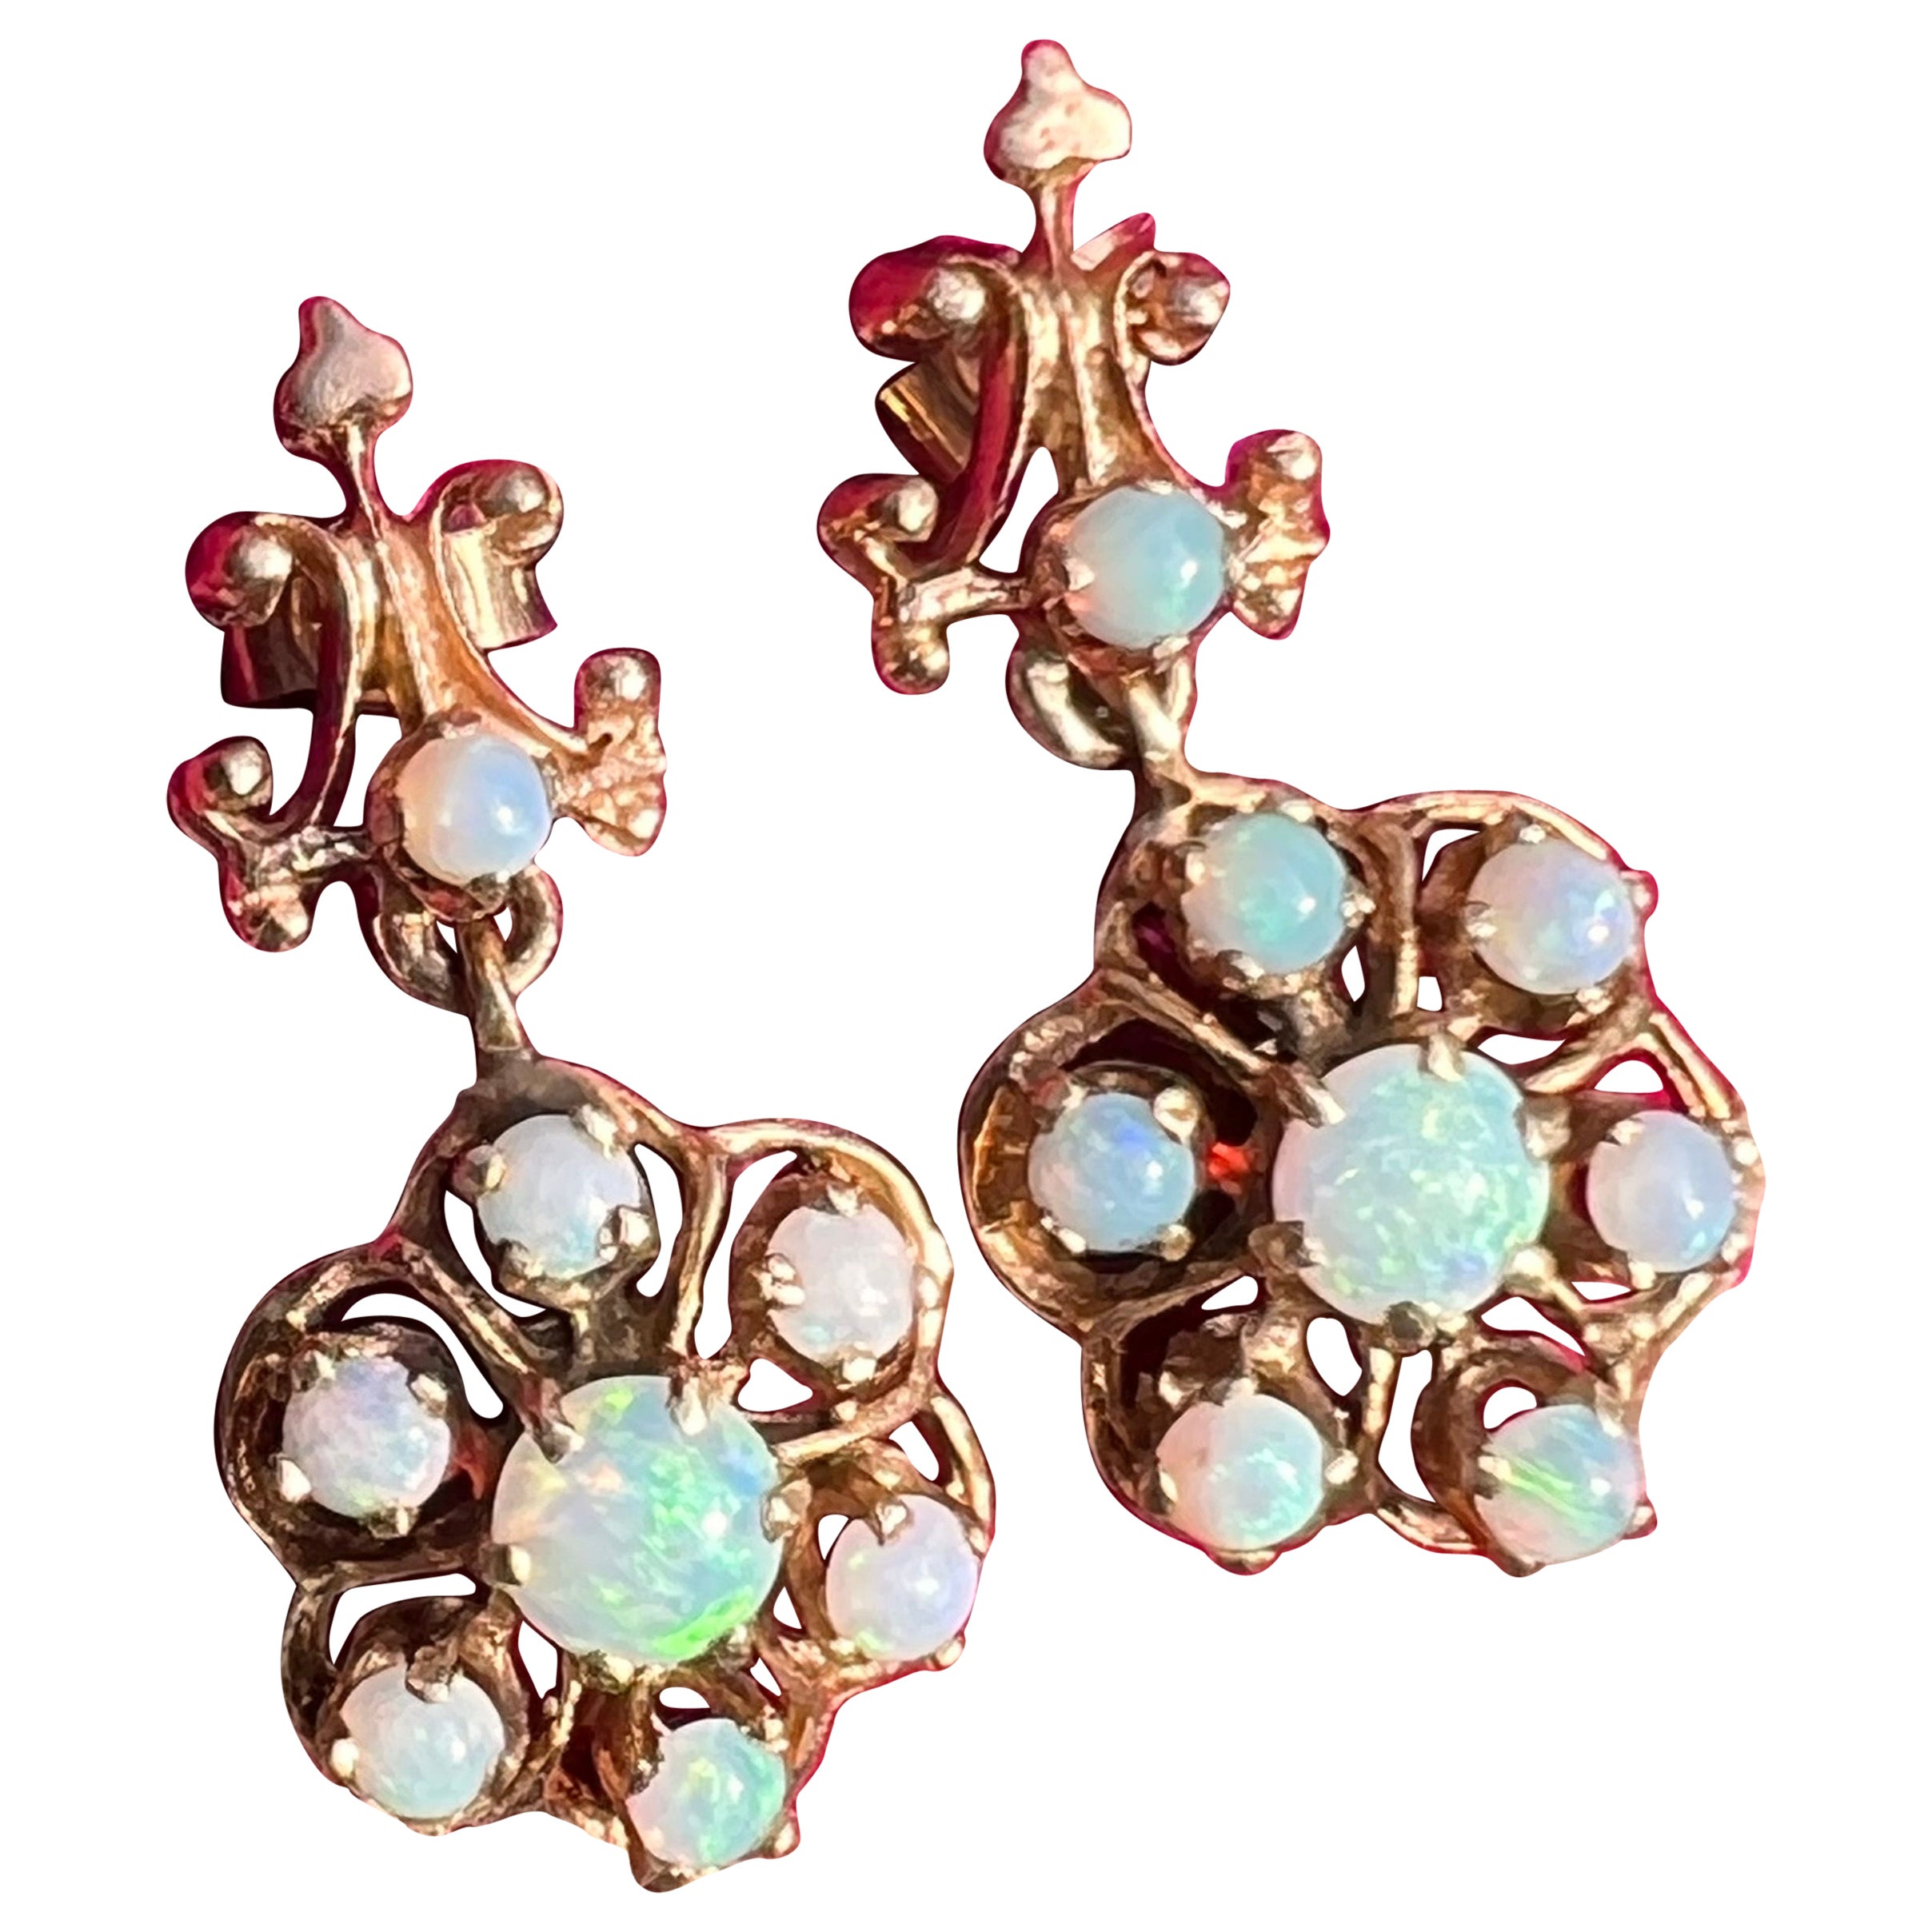 Gold Opal dangle Earrings Pireced ears Victorian revival jewelry 